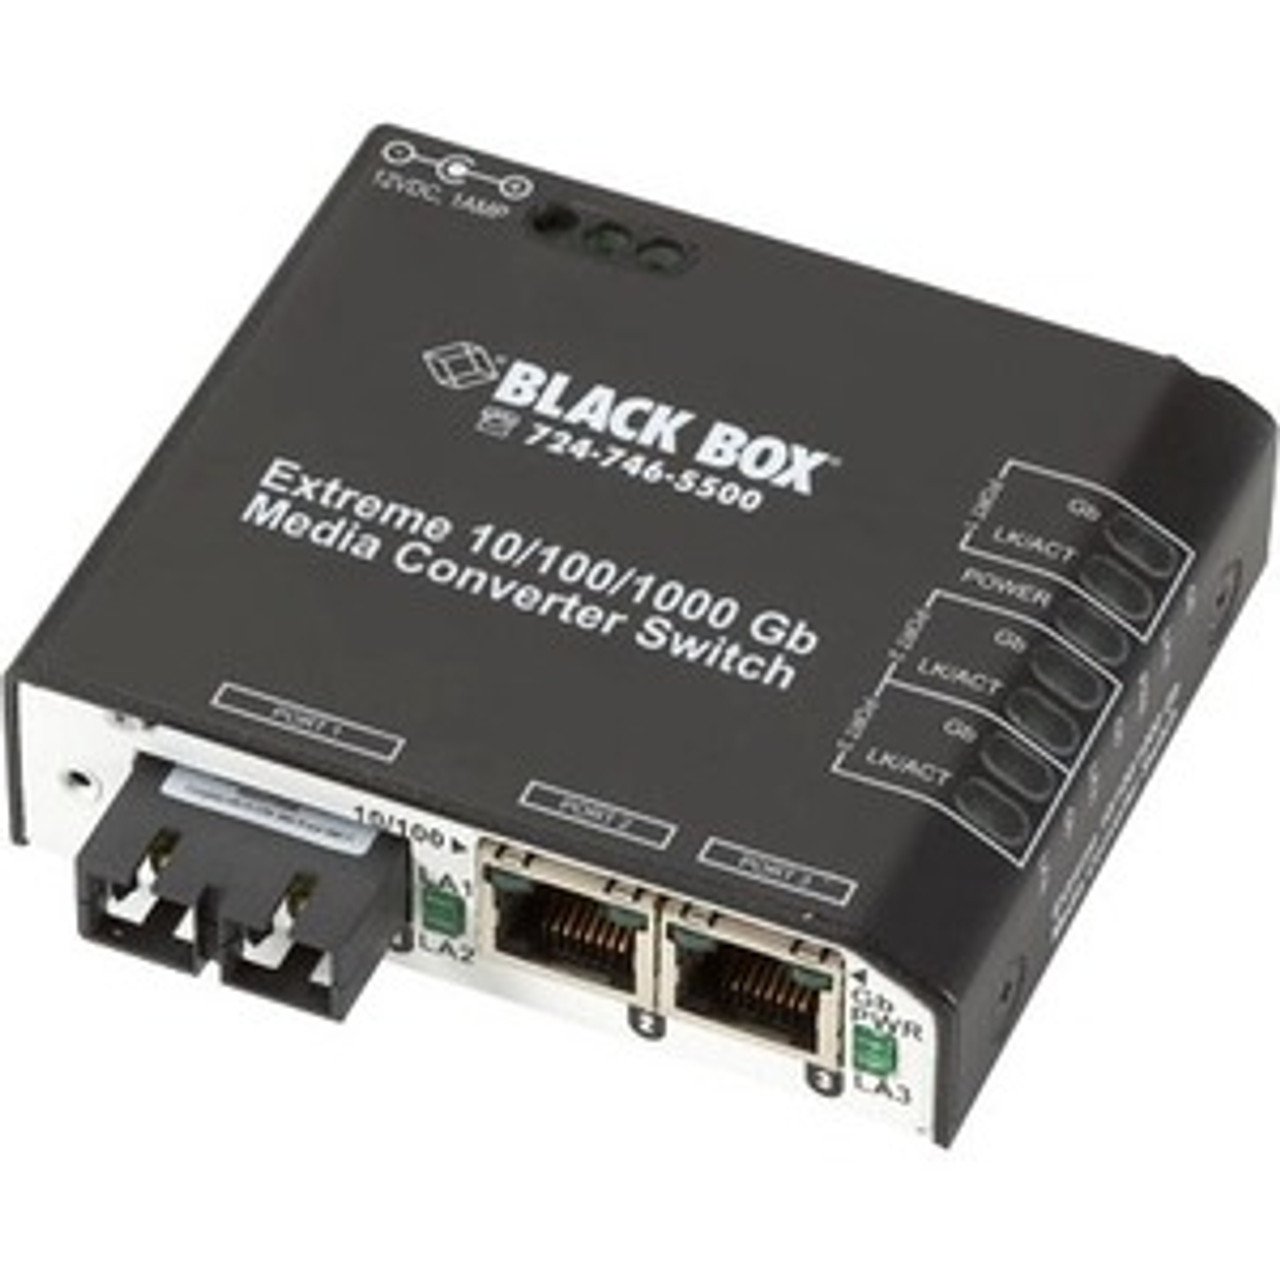 Black Box LBH2001A-P-SC